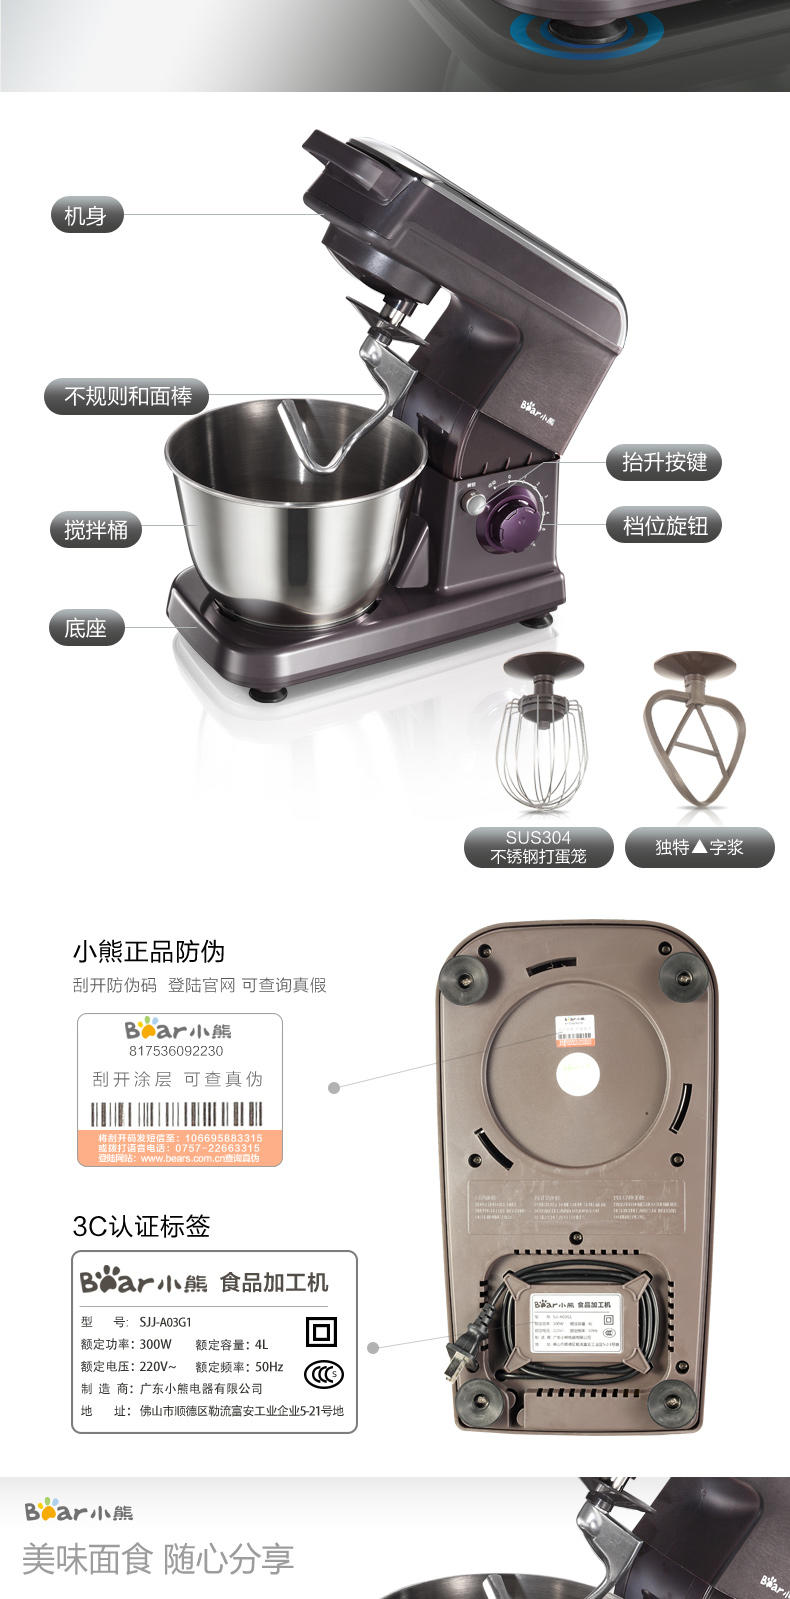 Bear/小熊 SJJ-A03G1和面机家用自动揉面机搅面机电动厨师机